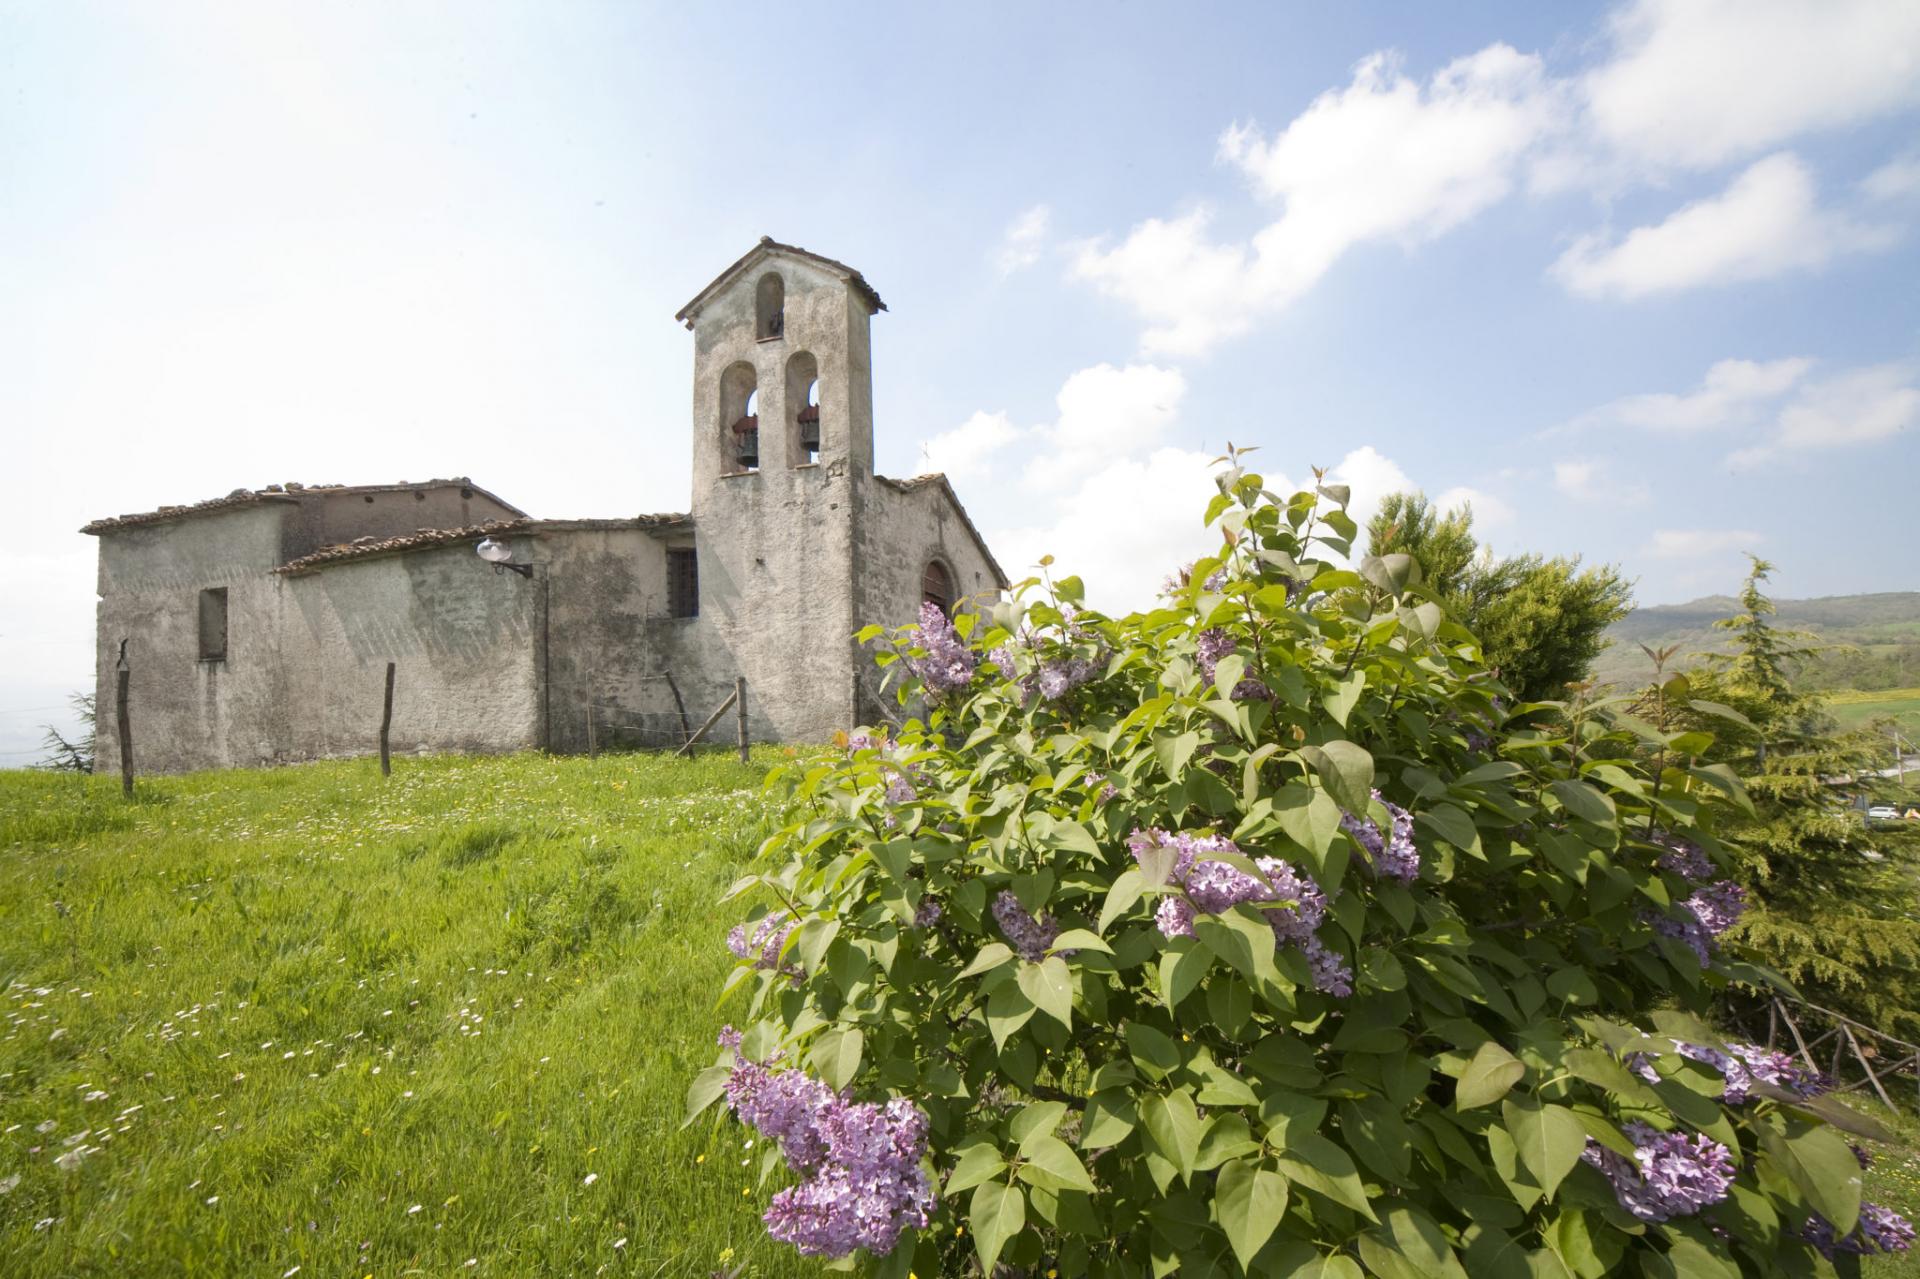 Borgo di Sartiano photo by Explore Valmarecchia